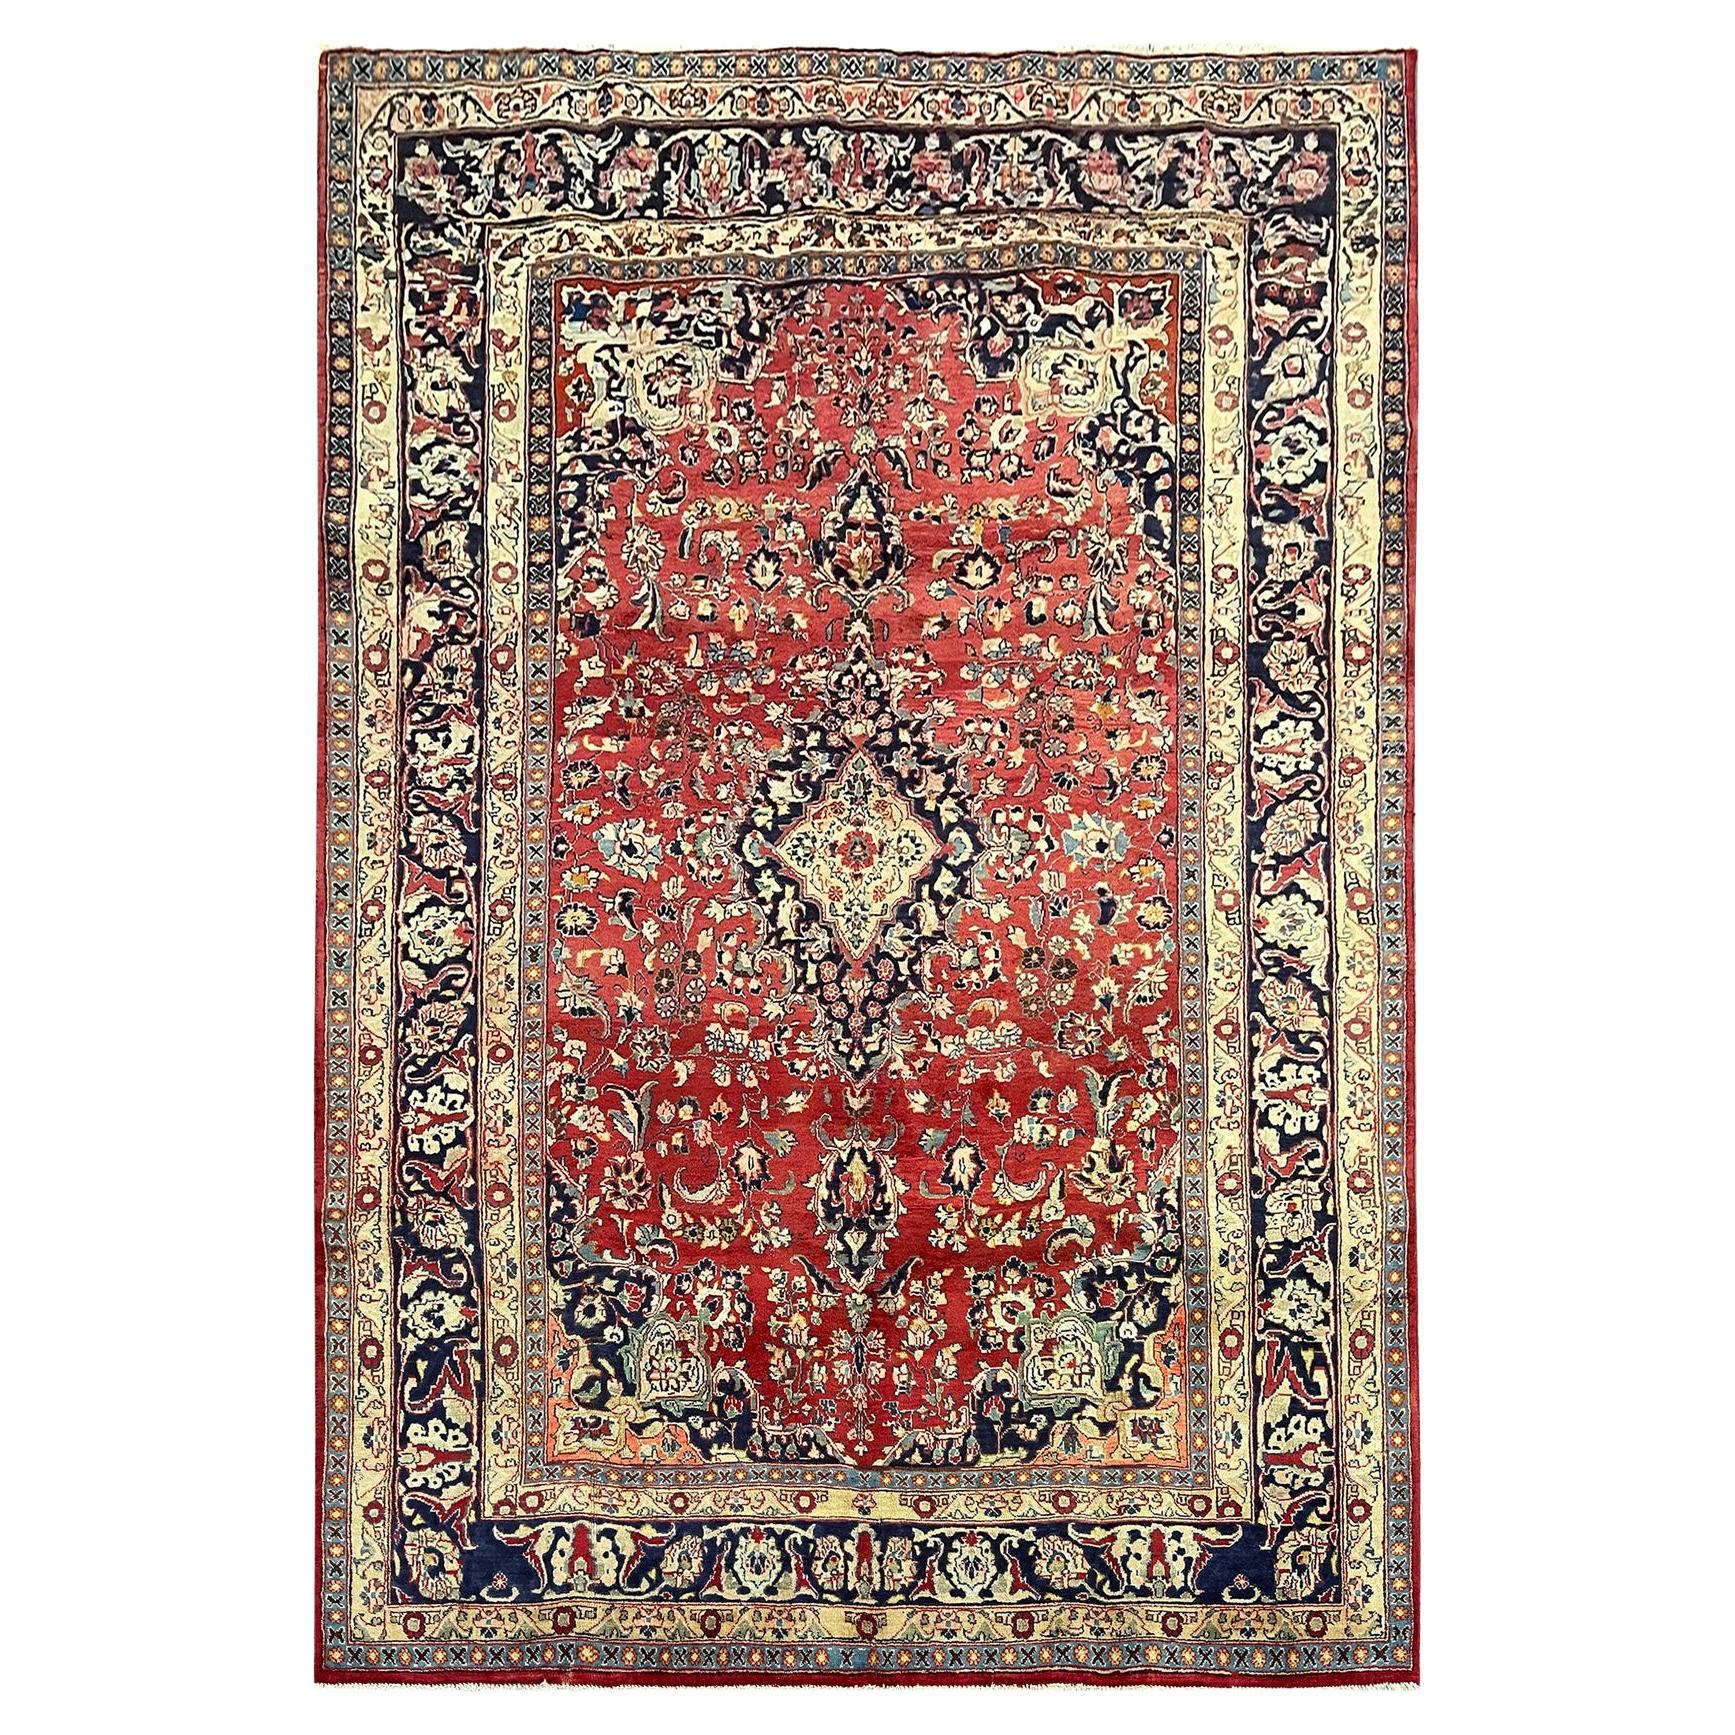 Großer handgefertigter roter orientalischer Vintage-Teppich aus Wolle 191 x 284 cm 